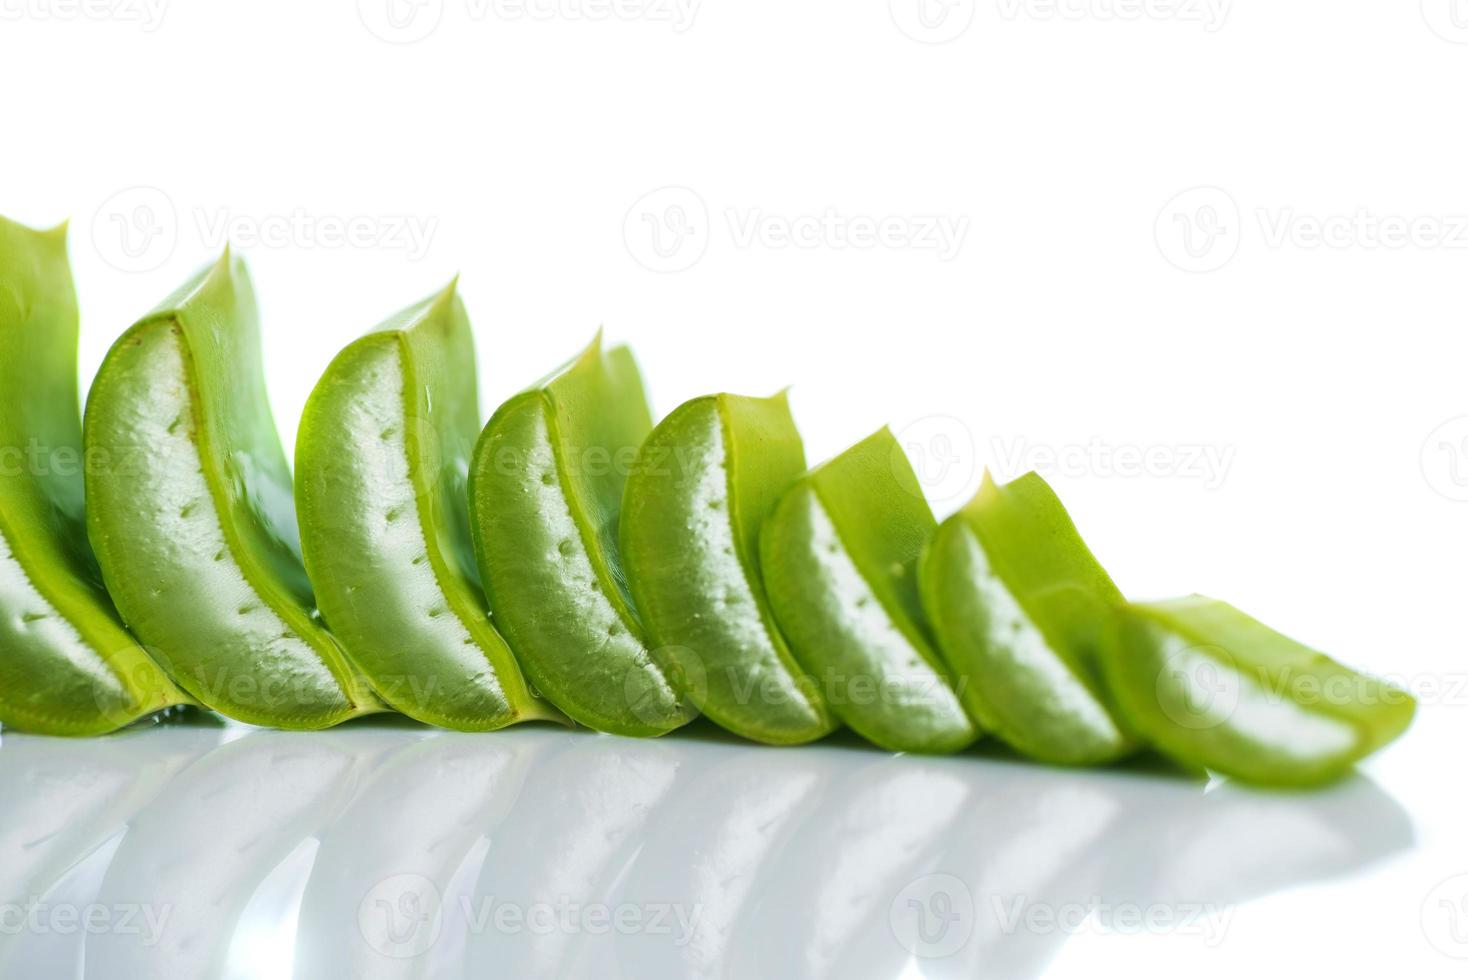 tranches de feuilles d'aloe vera et de gel d'aloe vera sur fond blanc. L'aloe vera est un médicament à base de plantes très utile pour les soins de la peau et des cheveux. photo